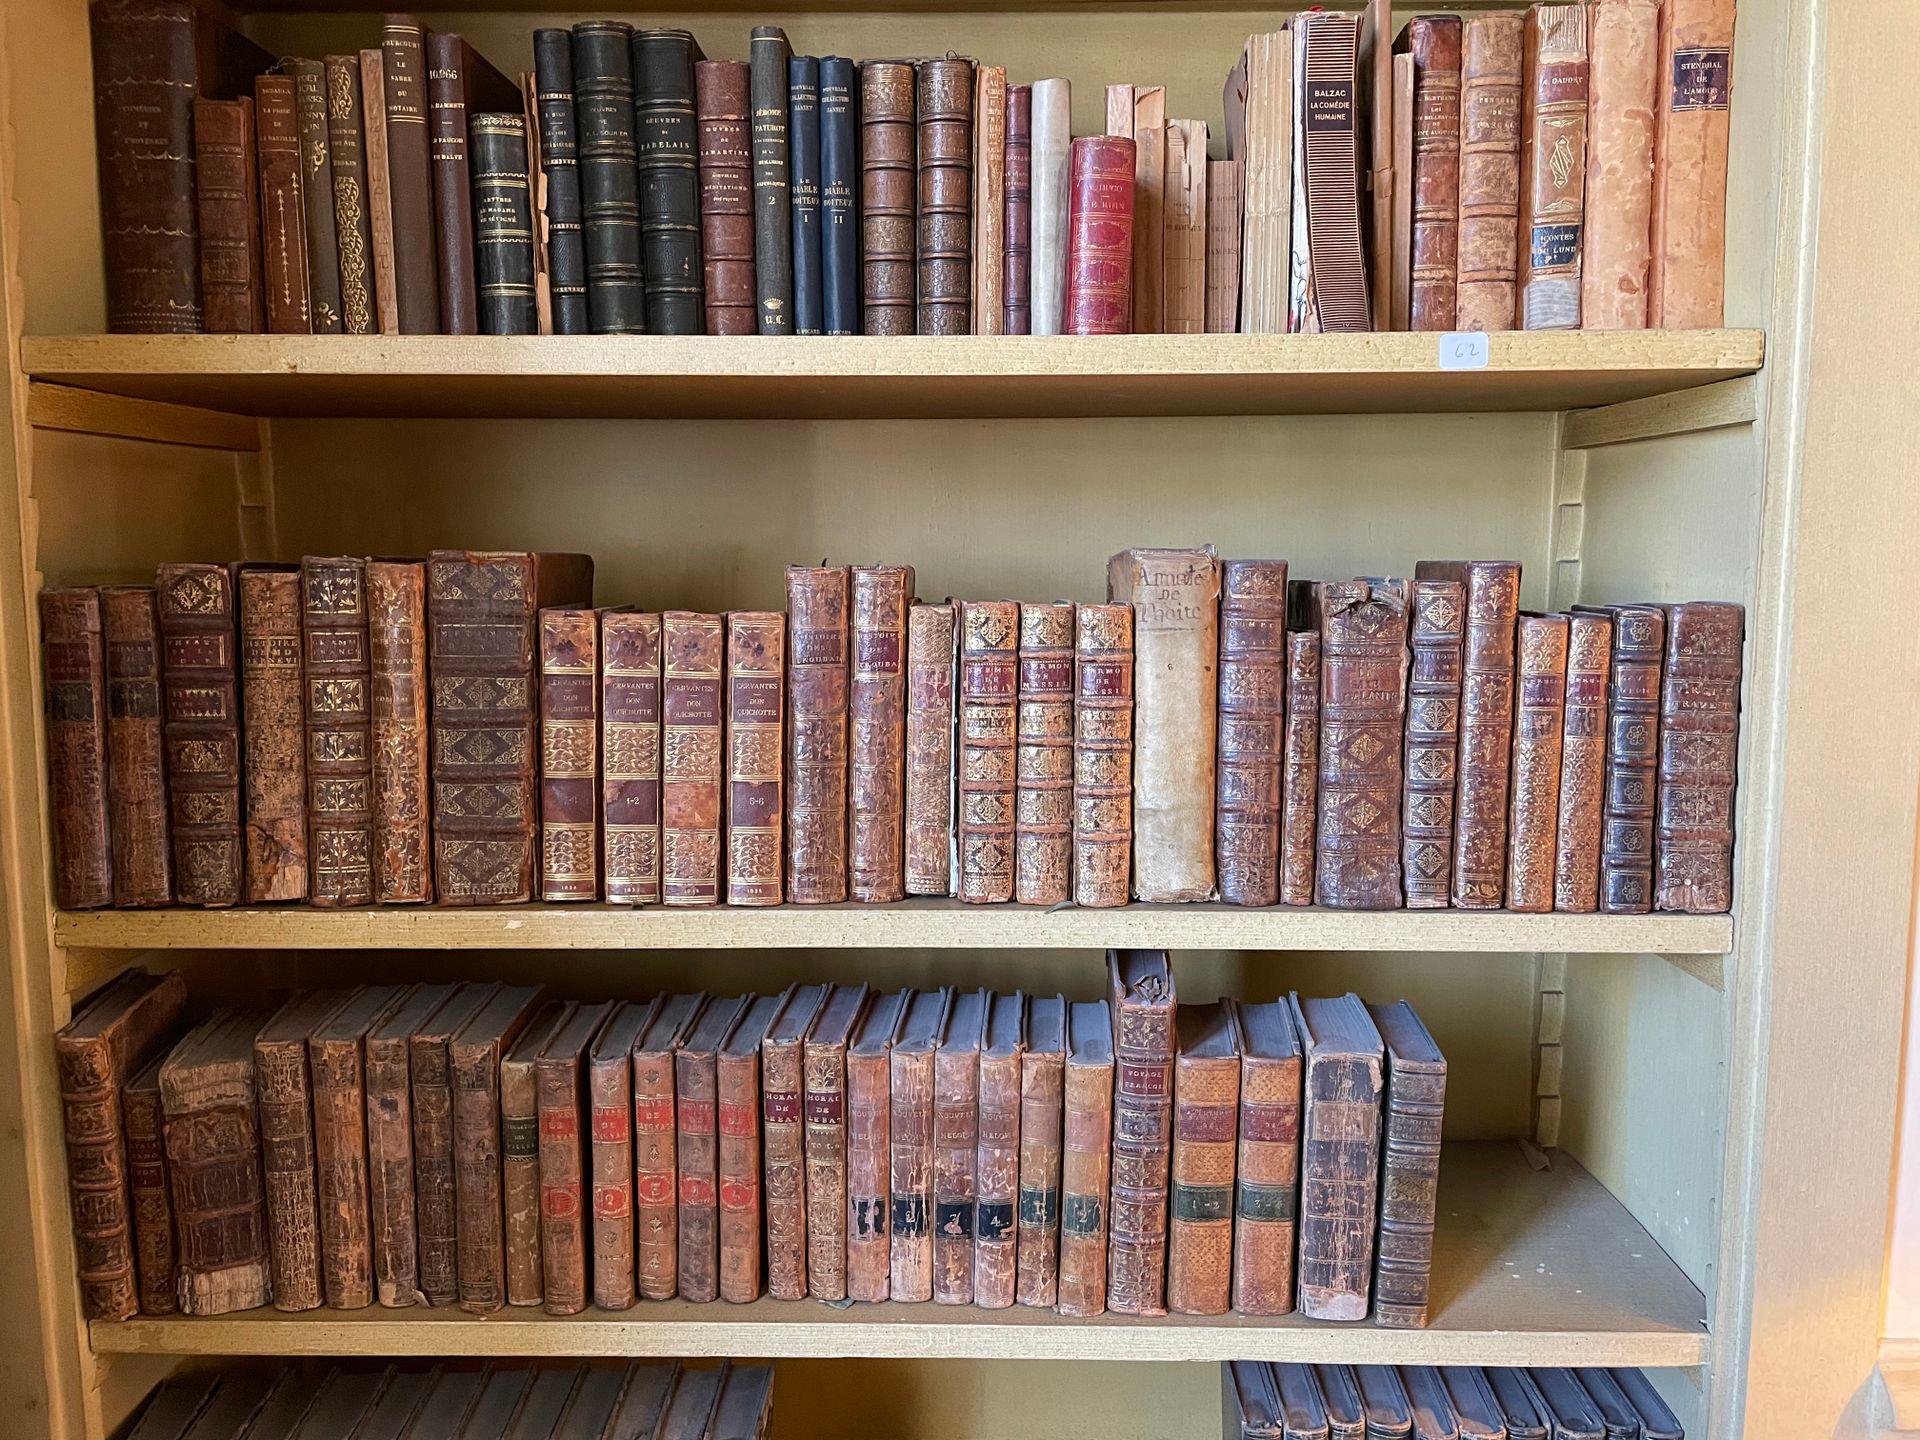 Null 一批旧书包括贺拉斯、新海洛伊丝、维吉尔（1780年，4卷）、《鲁滨逊漂流记》、塞万提斯、莎士比亚、雷格纳等。